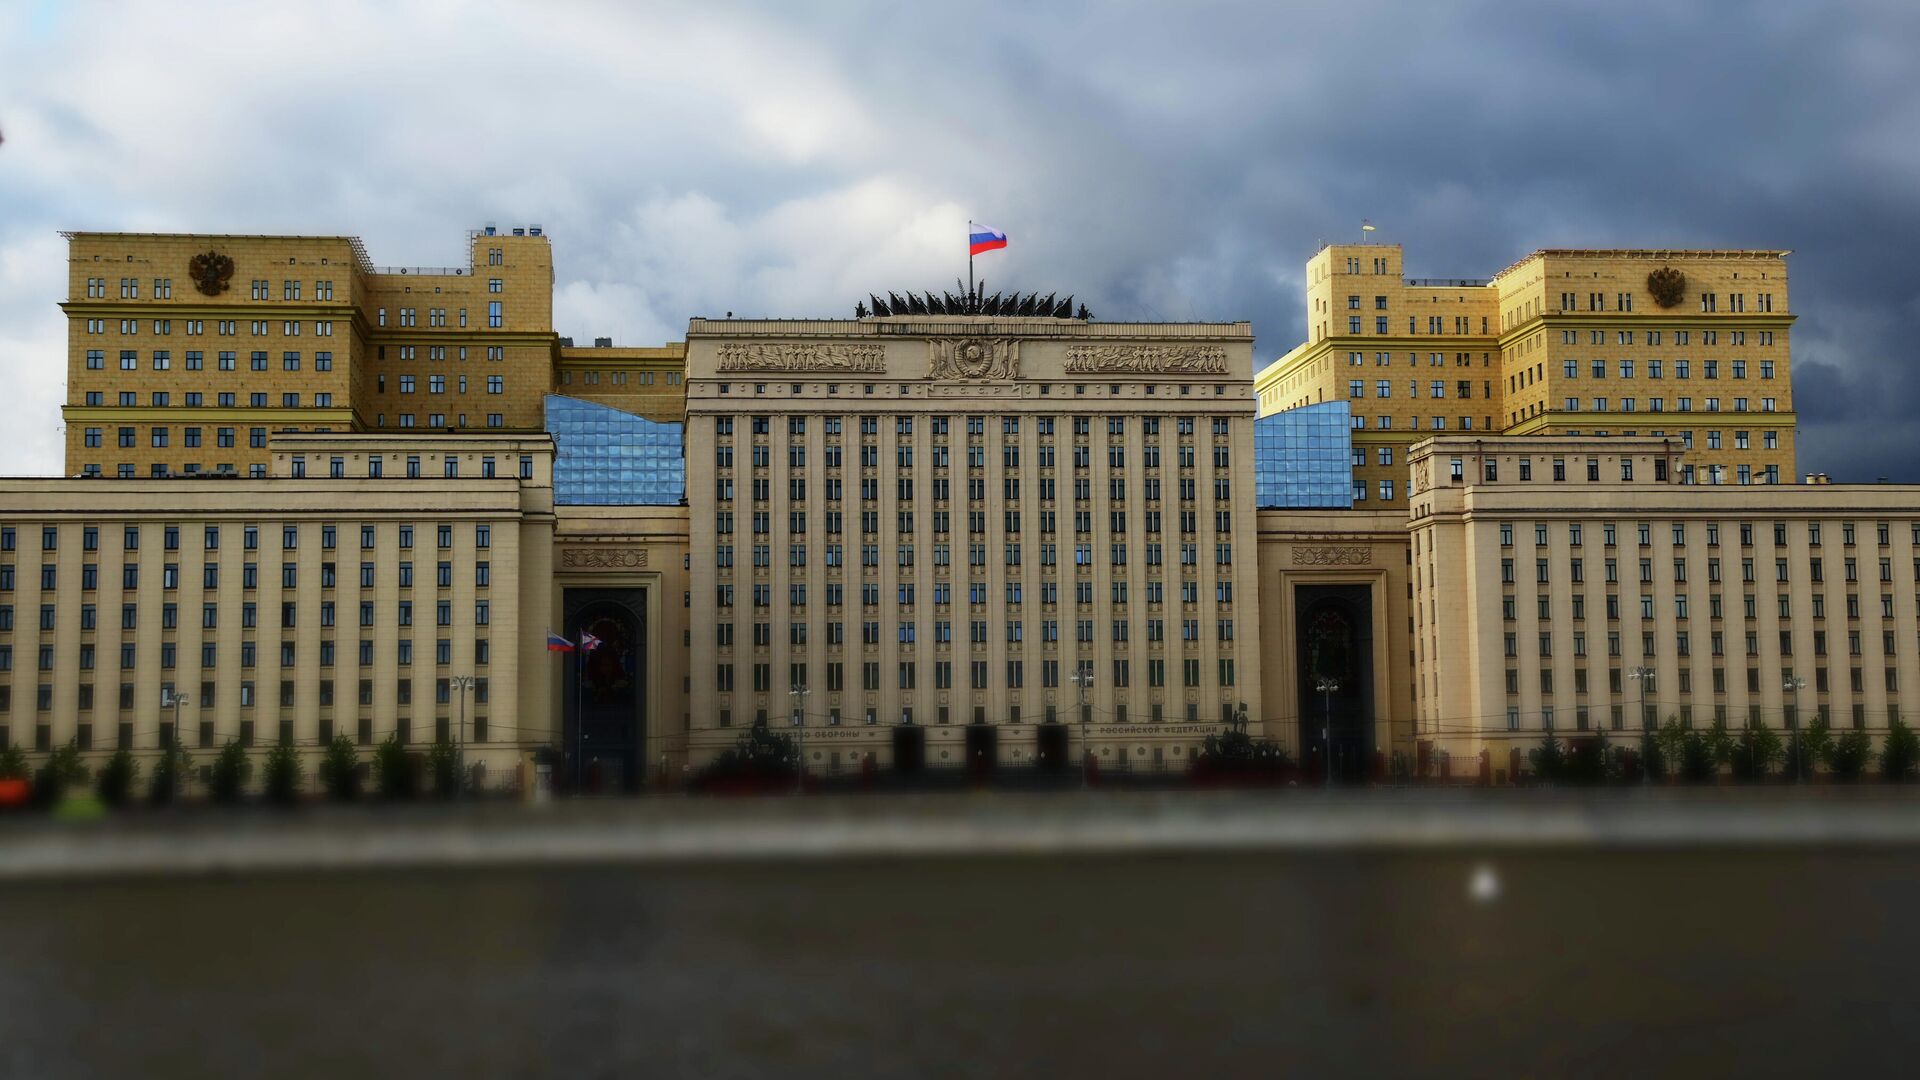 ՌԴ Պաշտպանության նախարարության շենքը Մոսկվայում - Sputnik Արմենիա, 1920, 10.03.2022